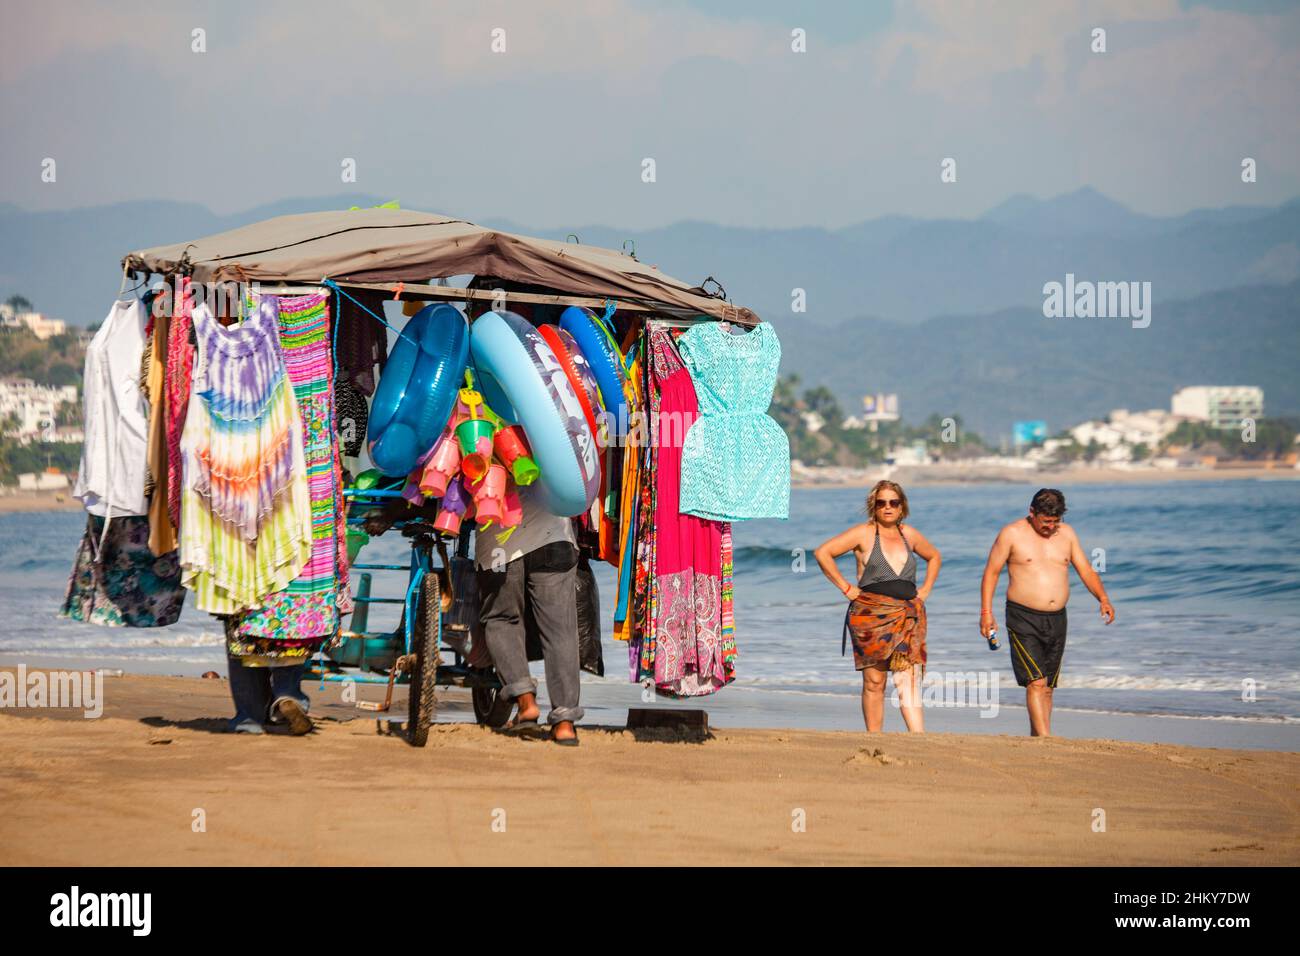 Vendor selling handicrafts. Manzanillo beach. Pacific Ocean. Colima. Mexico, North America Stock Photo